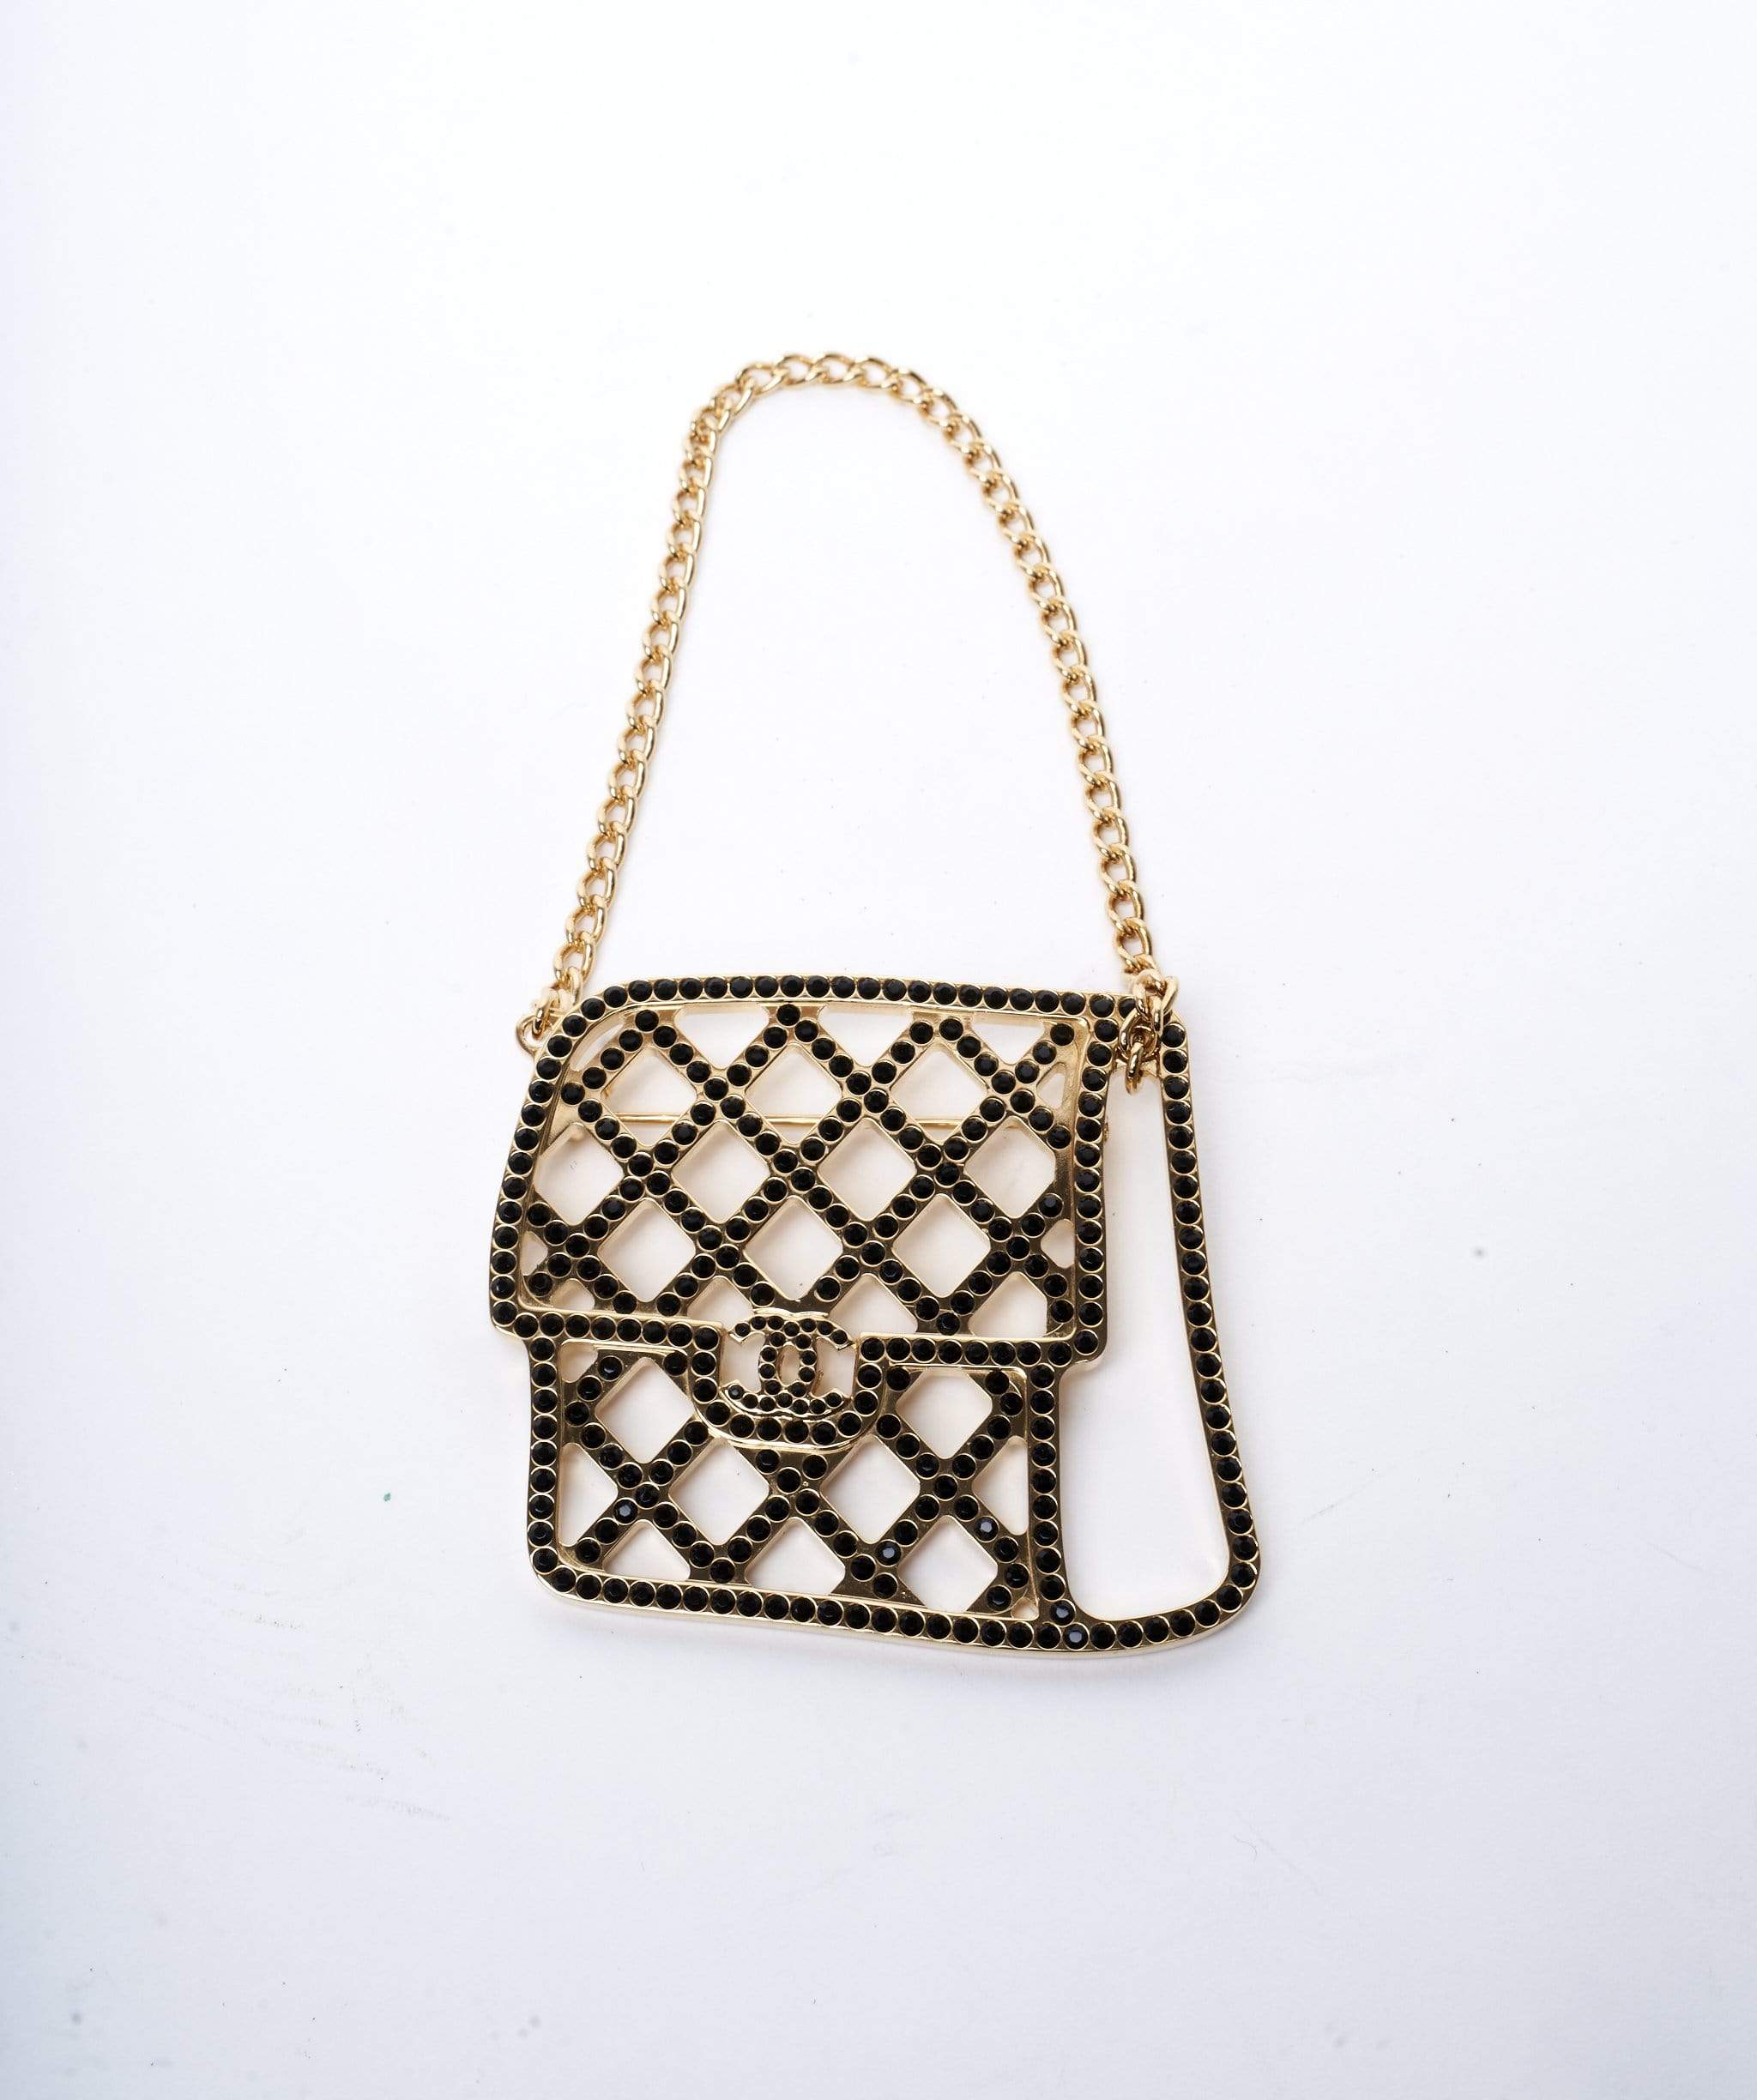 Chanel Chanel Classic Flap Bag Rhinestone Brooch